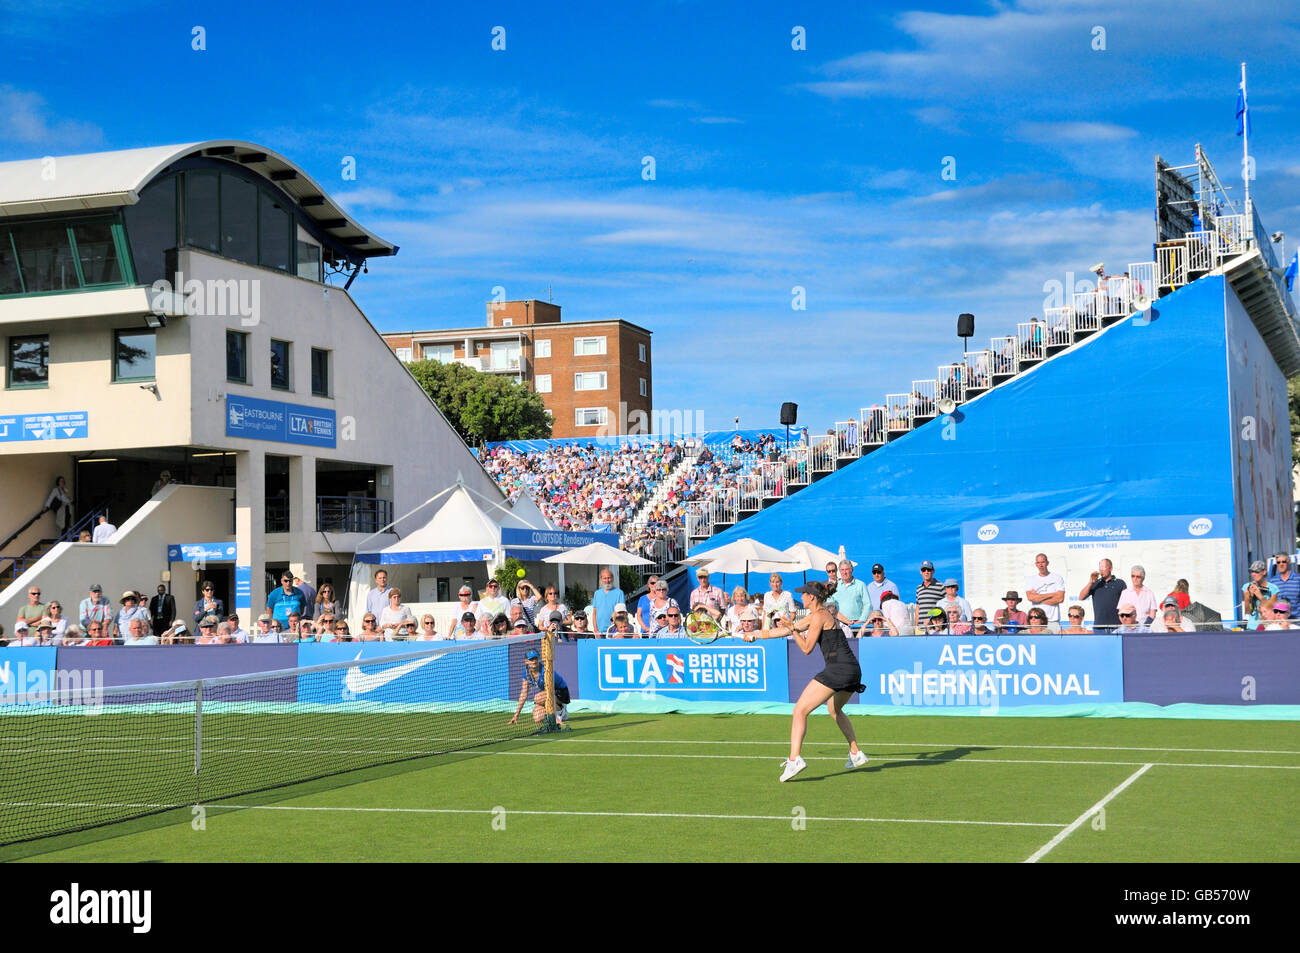 Aegon International Tennis Championships, le Devonshire Park, Eastbourne, East Sussex, England, UK Banque D'Images